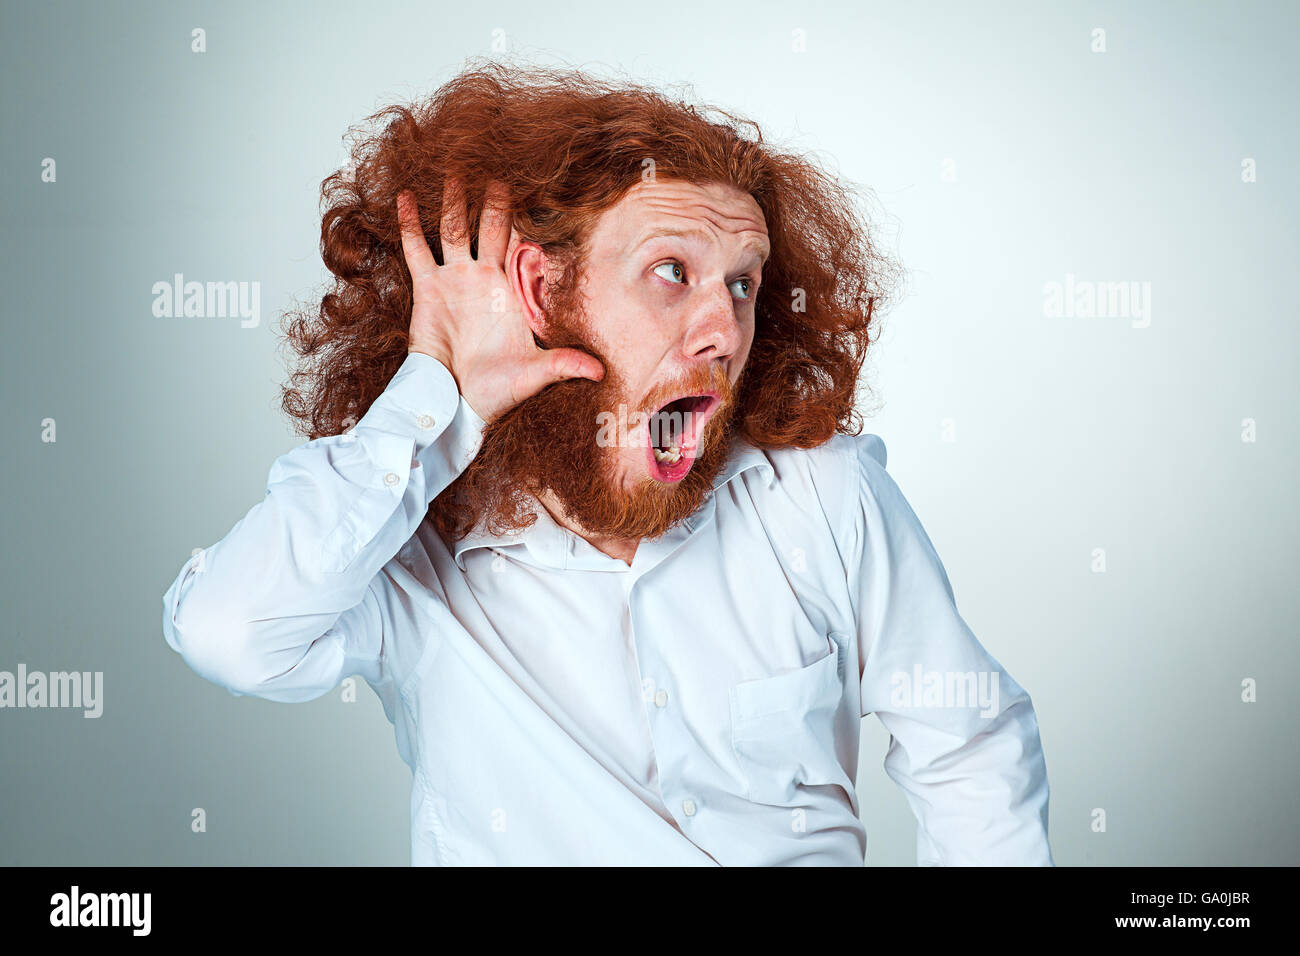 Ritratto di urlando giovane uomo con lunghi capelli rossi e sconvolto l'espressione del viso su sfondo grigio Foto Stock